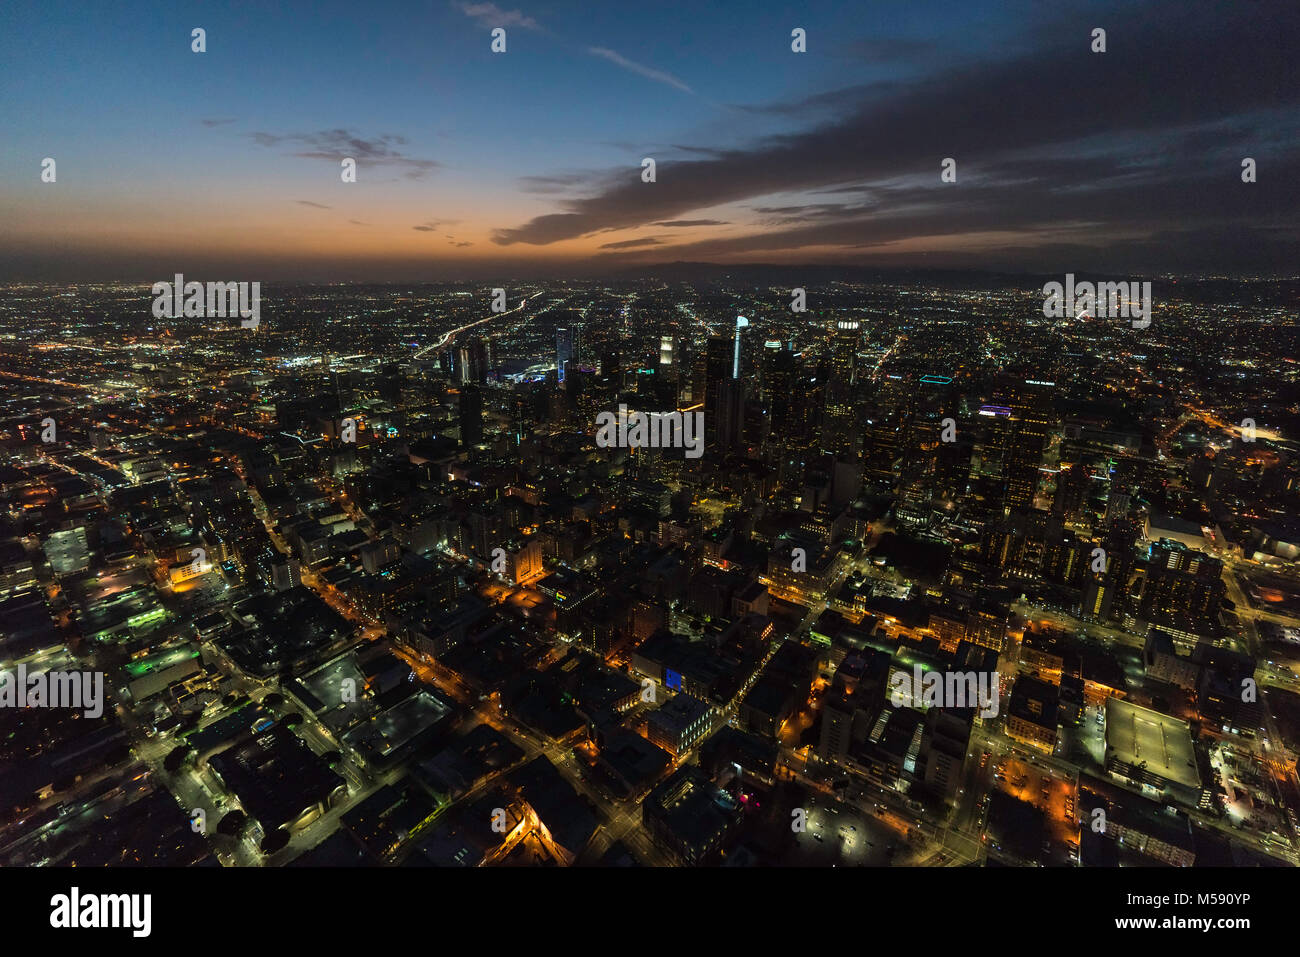 Los Angeles, California, Stati Uniti d'America - 11 Febbraio 2018: Notte Vista aerea del centro cittadino di strade urbane e gli edifici nella California Meridionale. Foto Stock